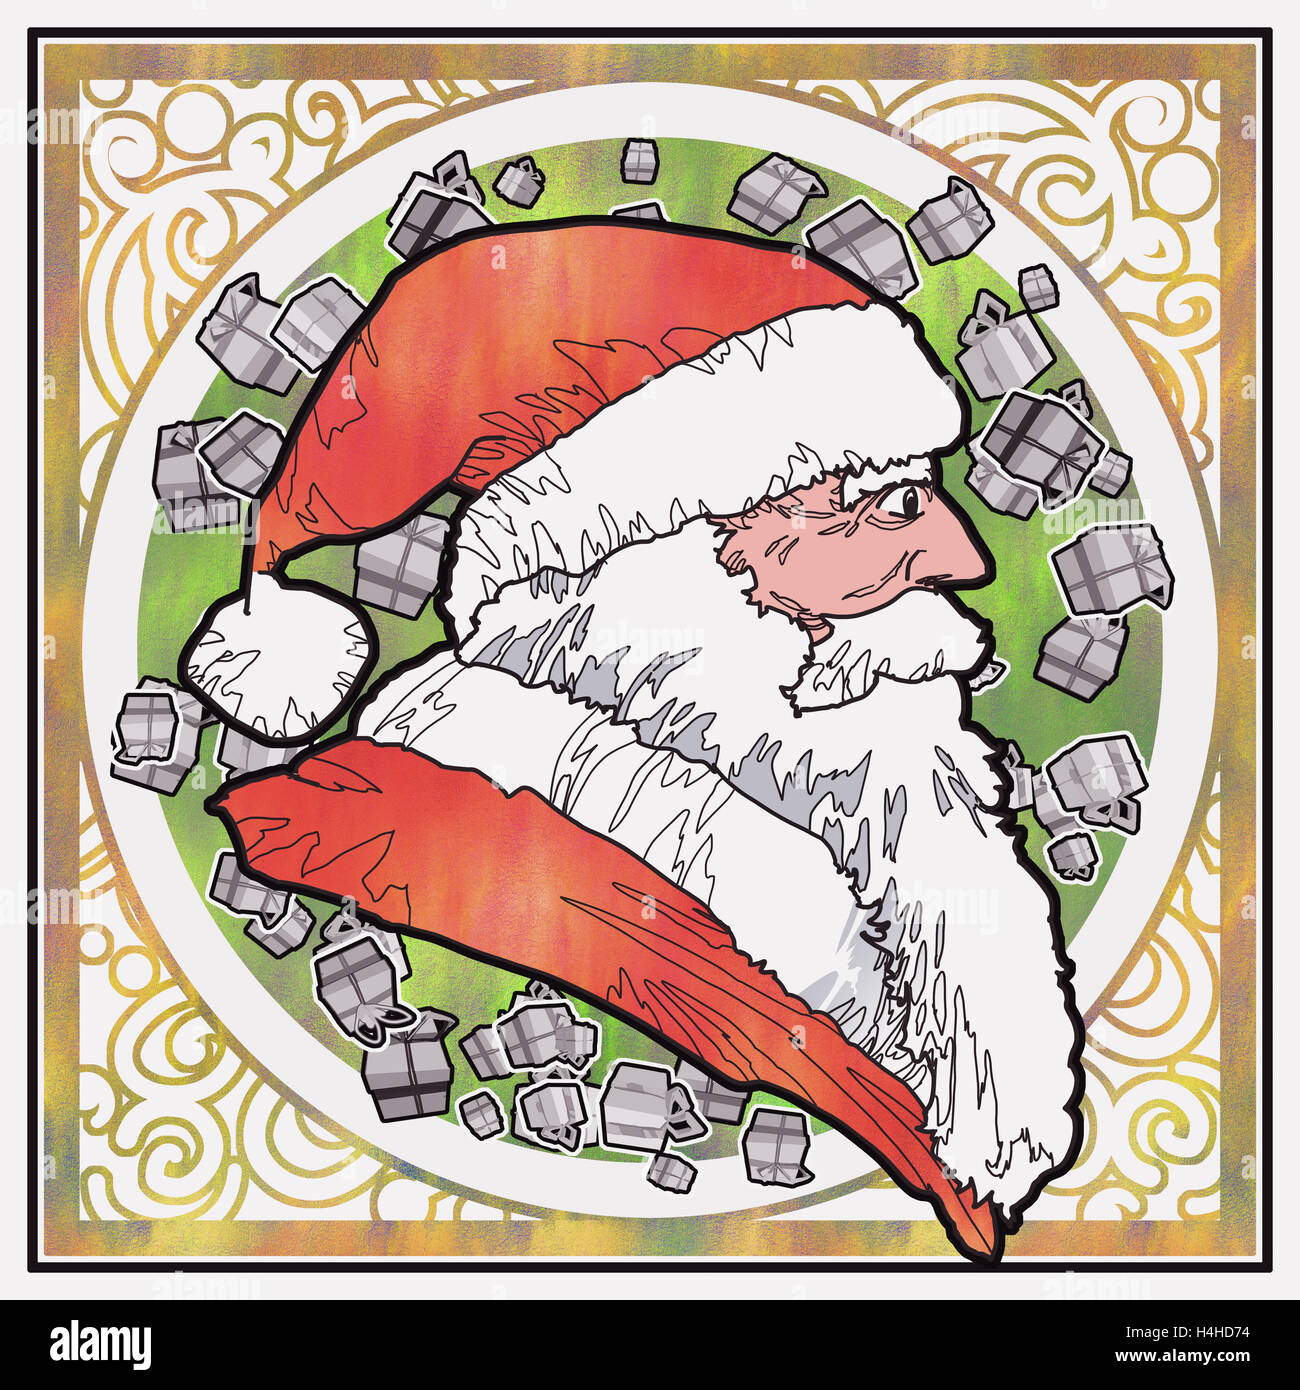 Vue latérale du père Noël avec une impression de fond graphique,illustration peinture Banque D'Images